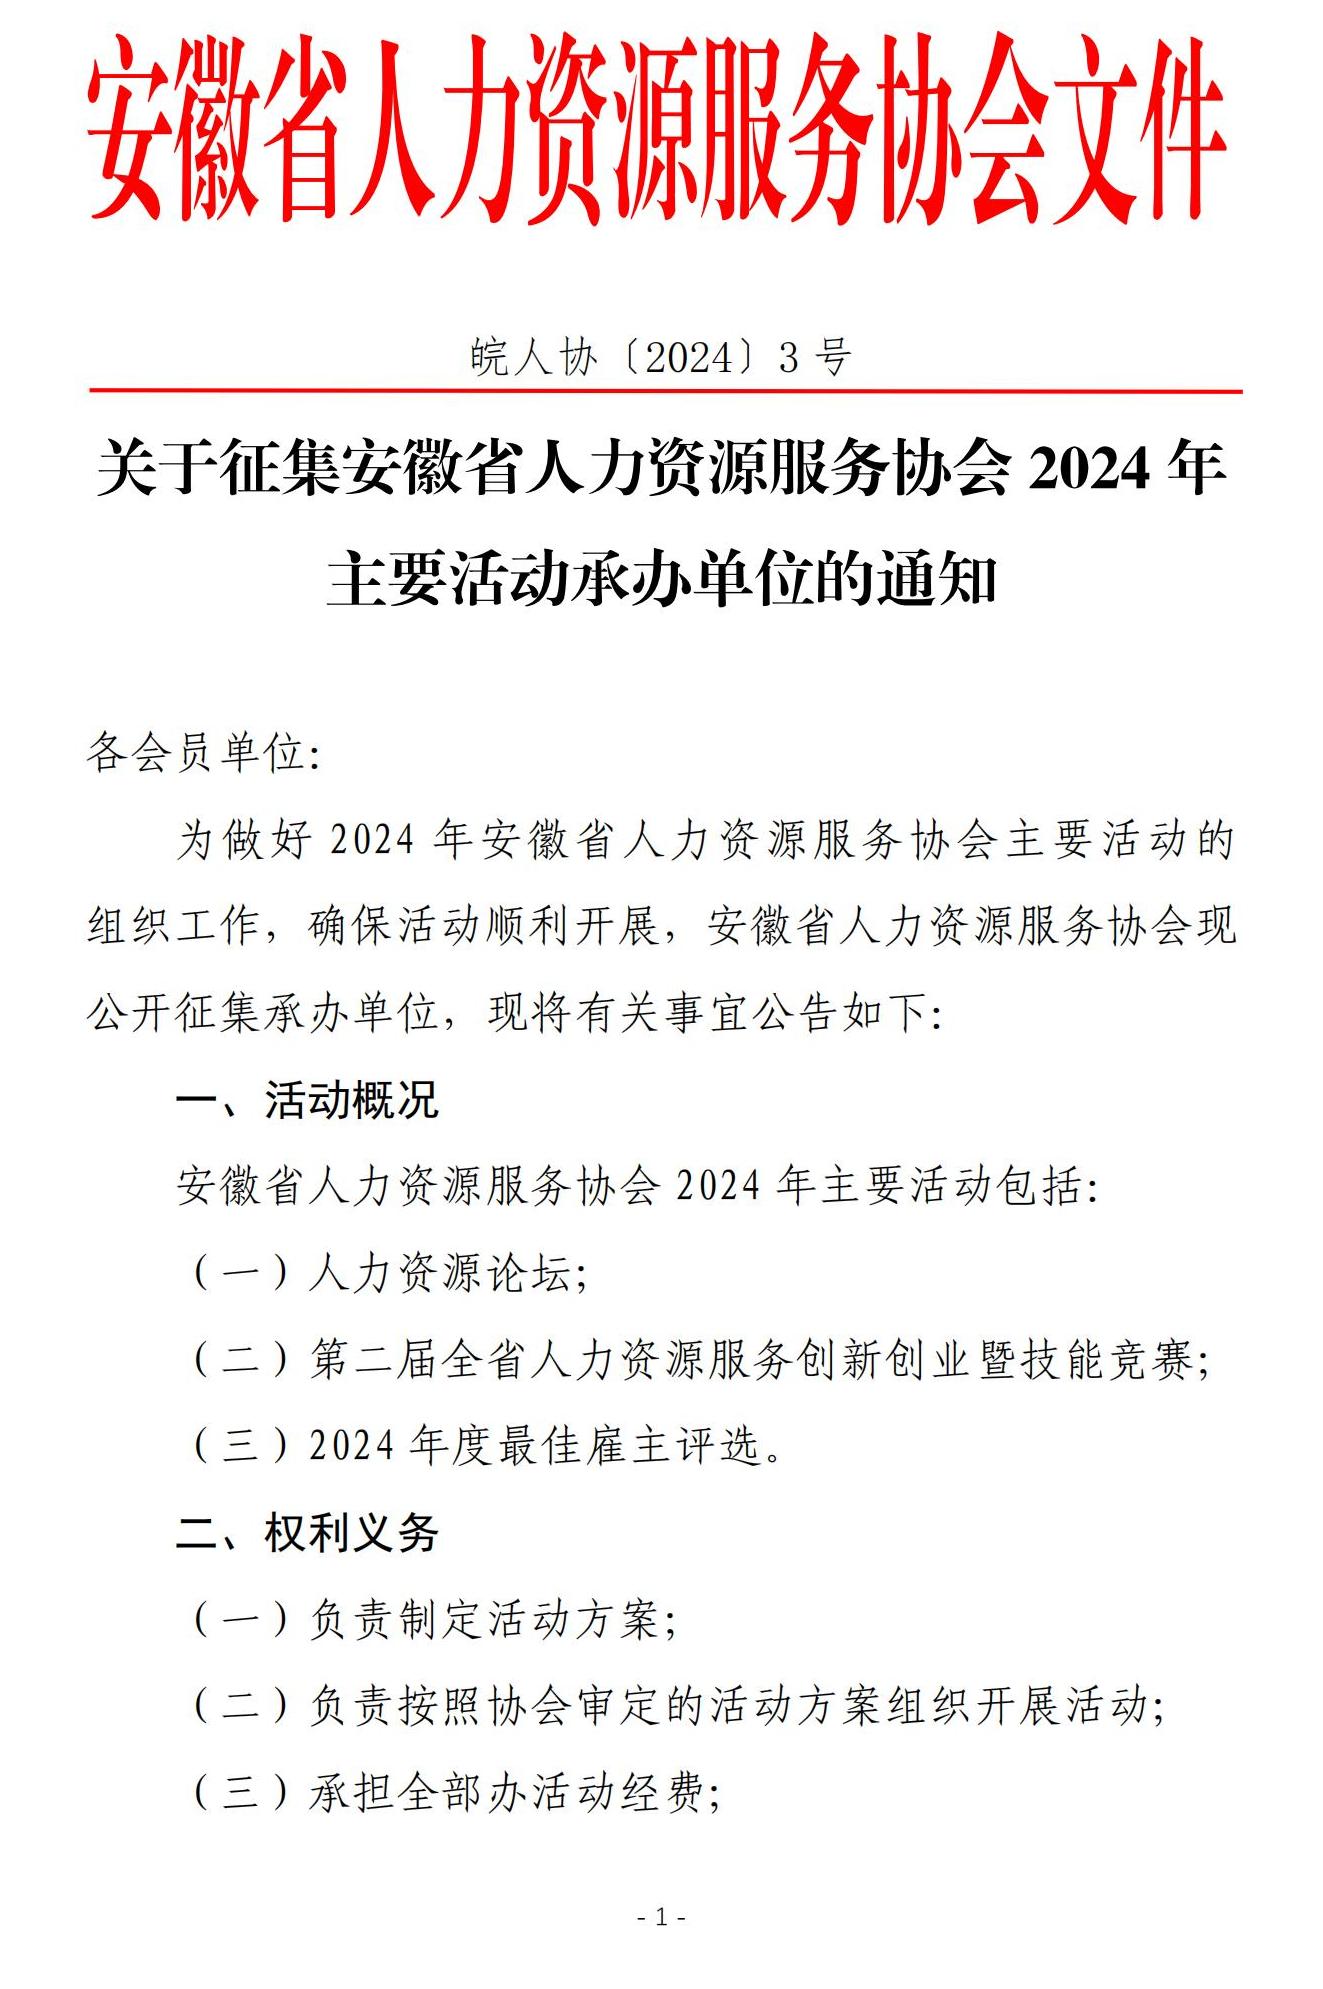 皖人协（2024）3号，关于公开征集协会2024年主要活动承办单位的公告(1)(1)_00.jpg